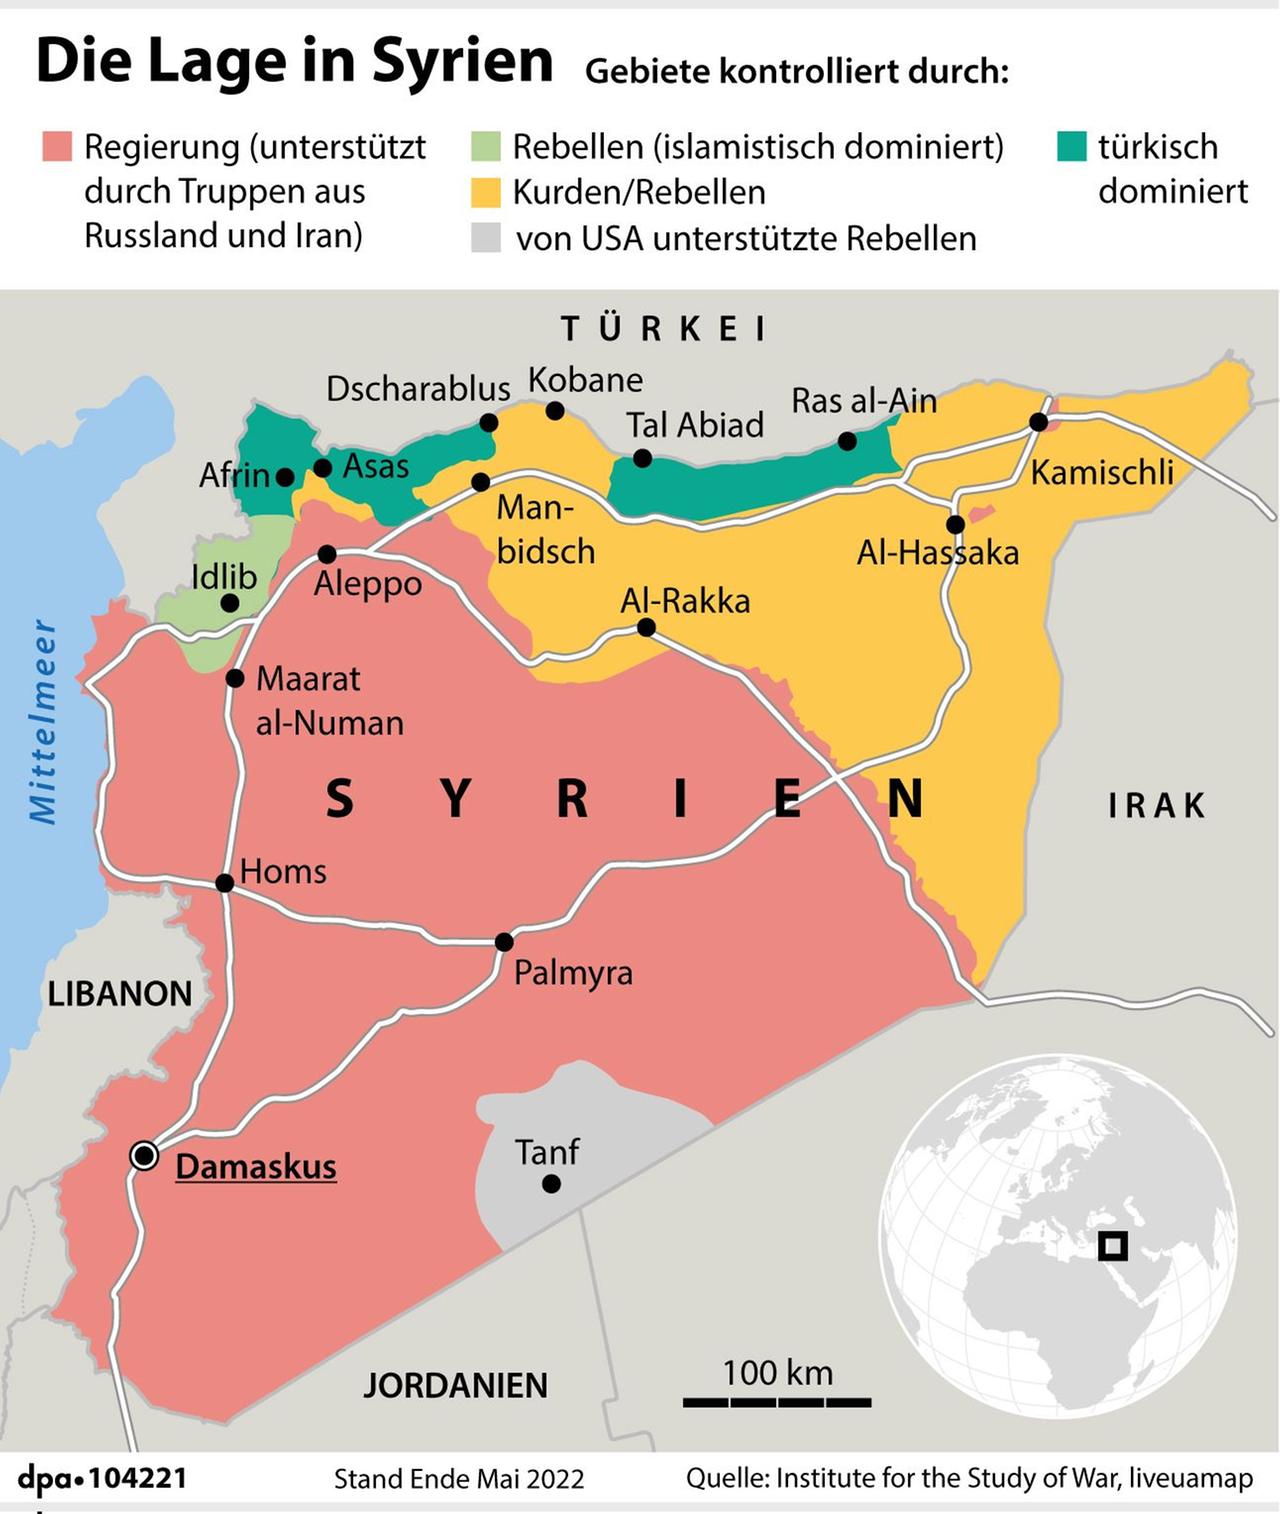 Eine Karte zeigt die Lage in Syrien und wer welche Gebiete kontrolliert